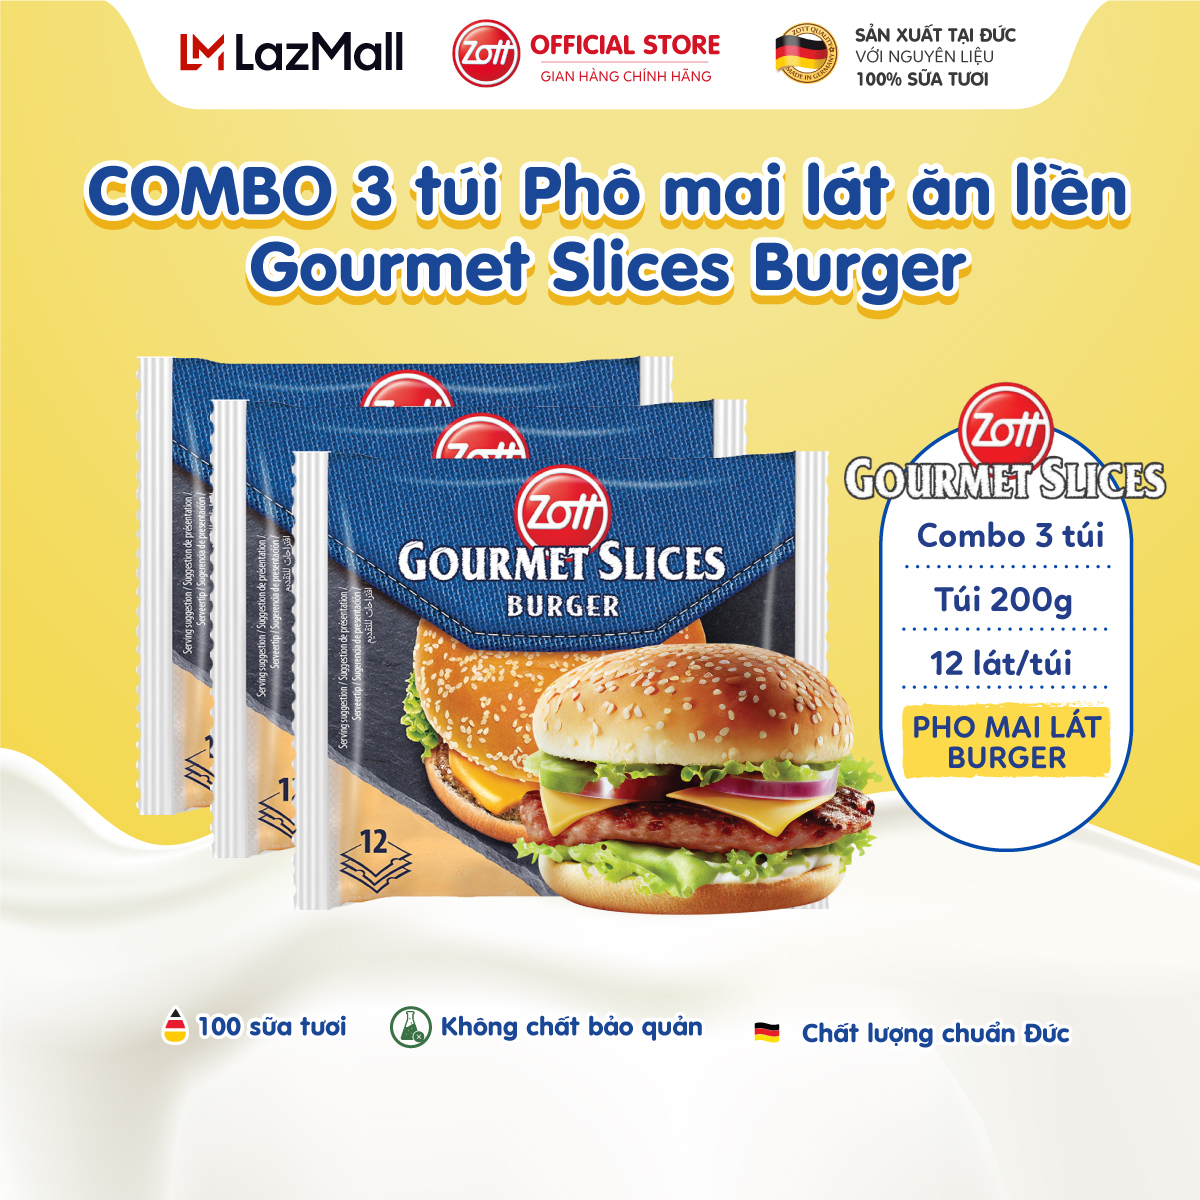 COMBO 3 túi Phô mai lát Zott Gourmet Slices BURGER nhập khẩu từ Đức